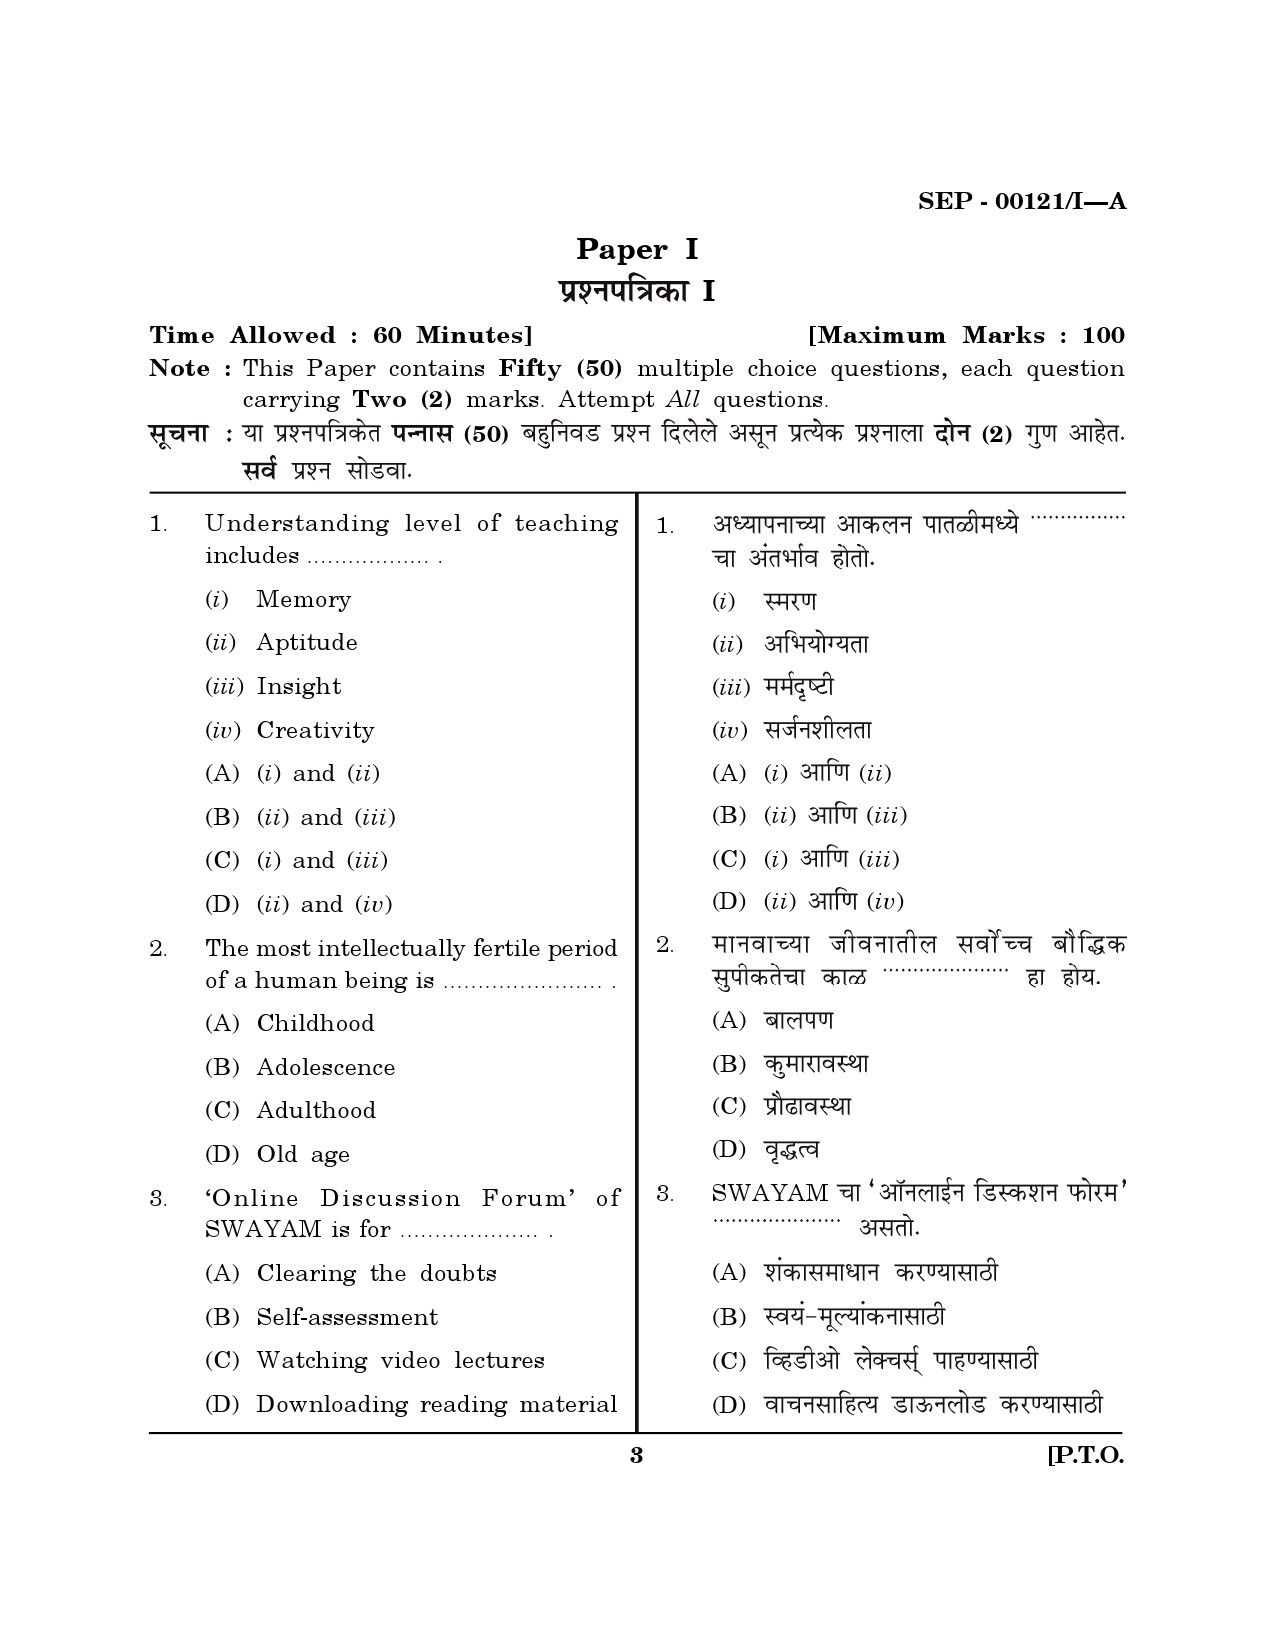 Maharashtra SET Exam Paper I Question Paper September 2021 2